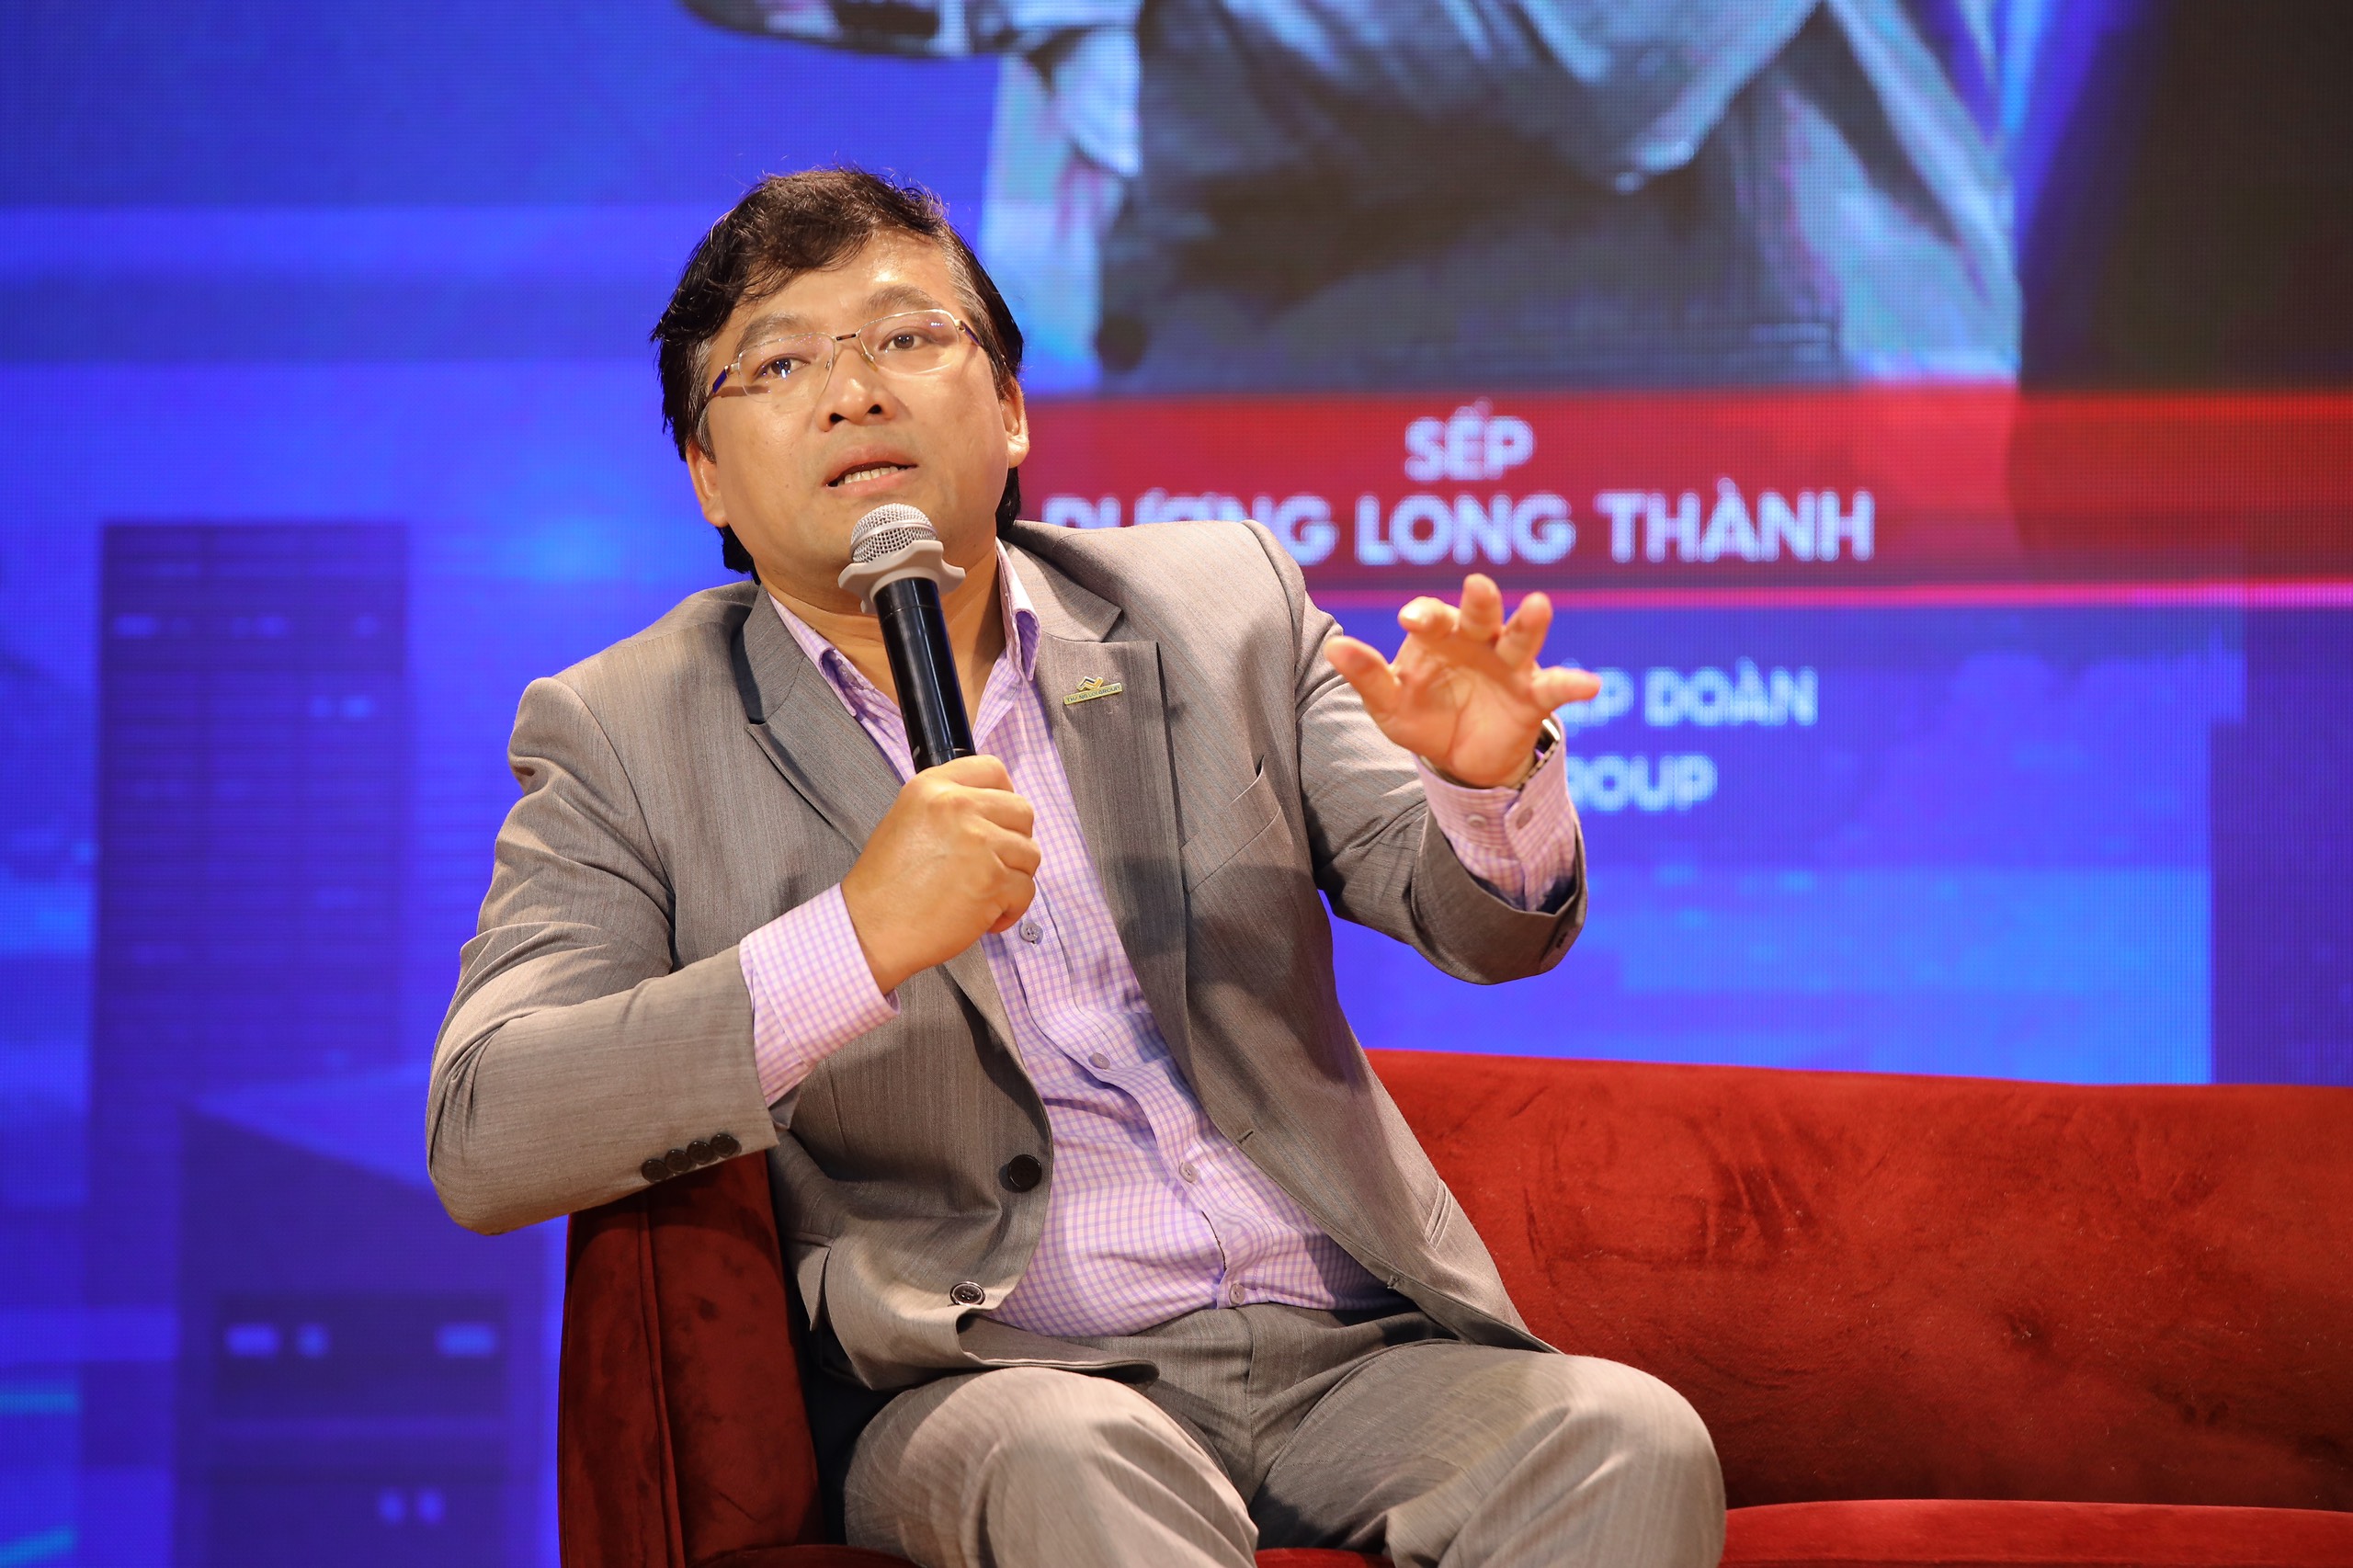 Sếp Dương Long Thành – chủ tịch Thắng Lợi Group: ChatGPT chỉ là công cụ giúp làm việc hiệu quả hơn